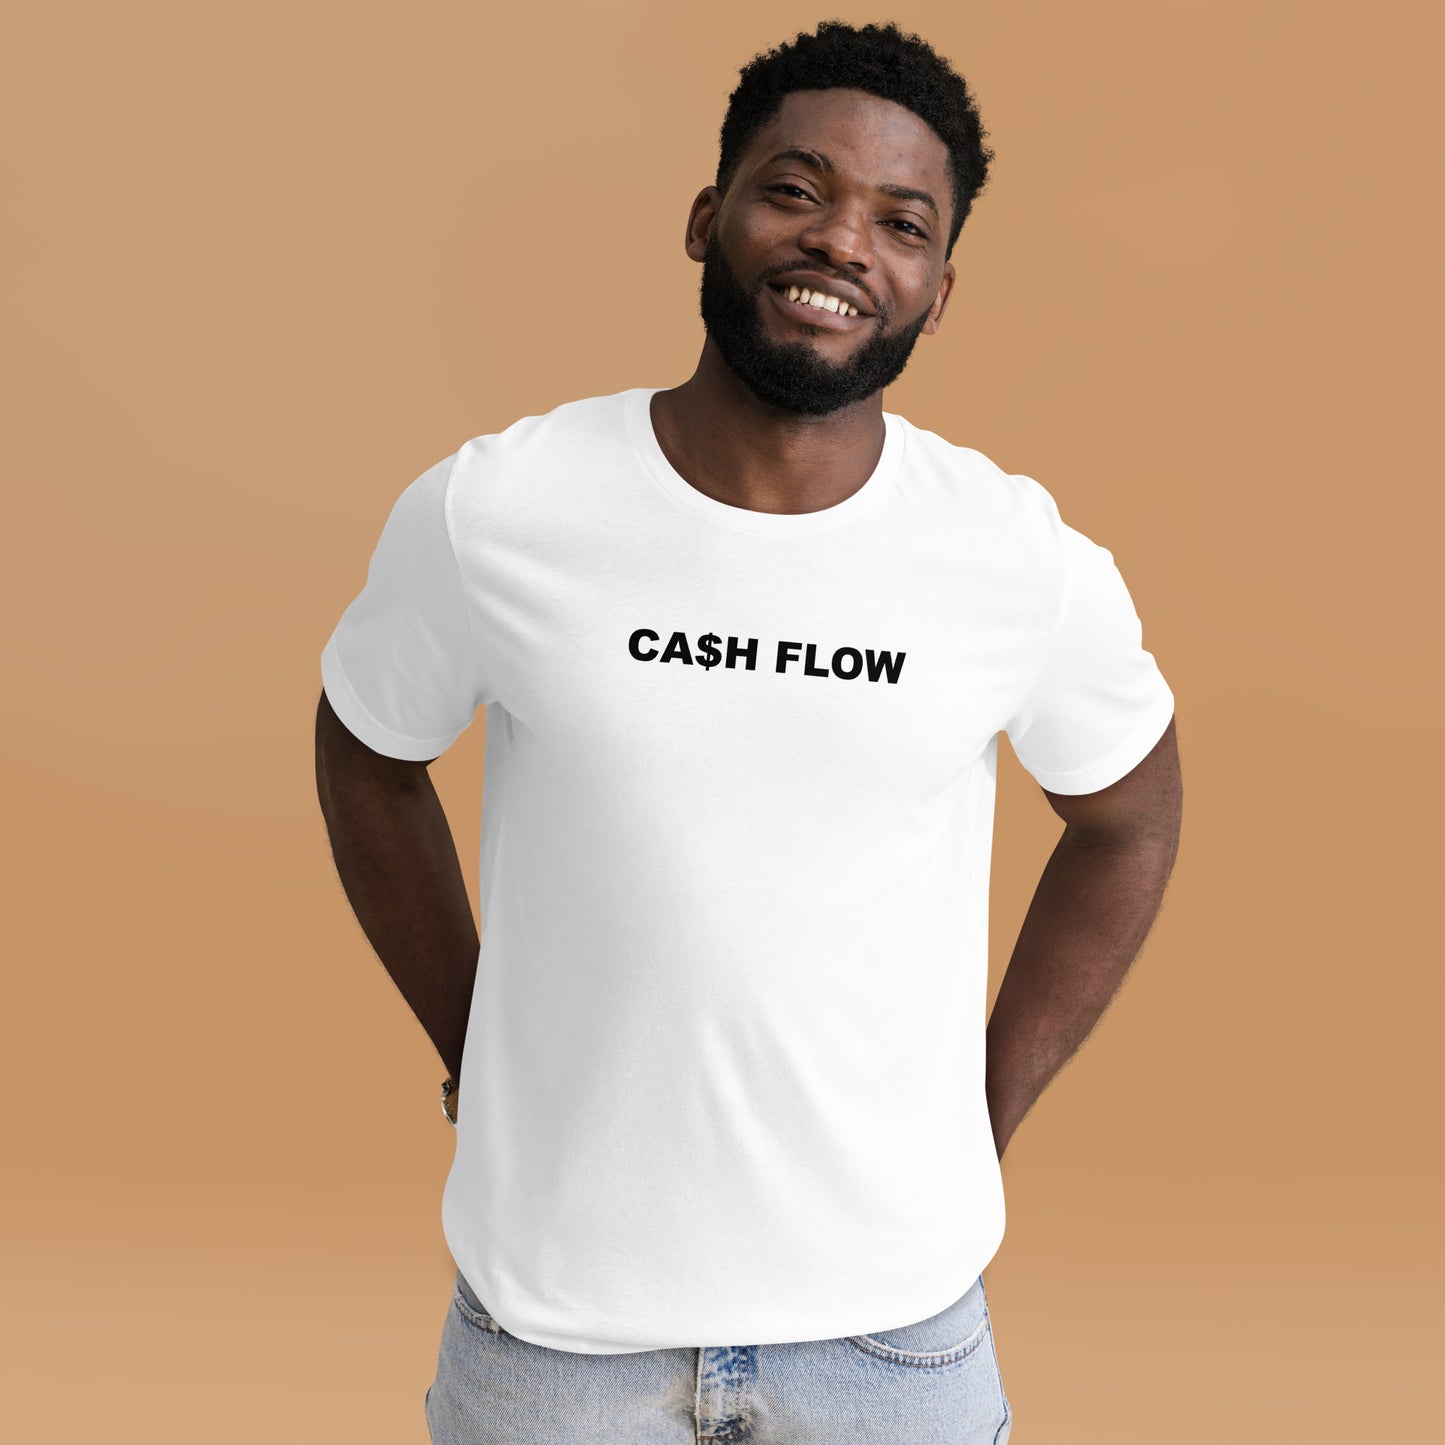 CA$H FLOW - BLACK TEXT